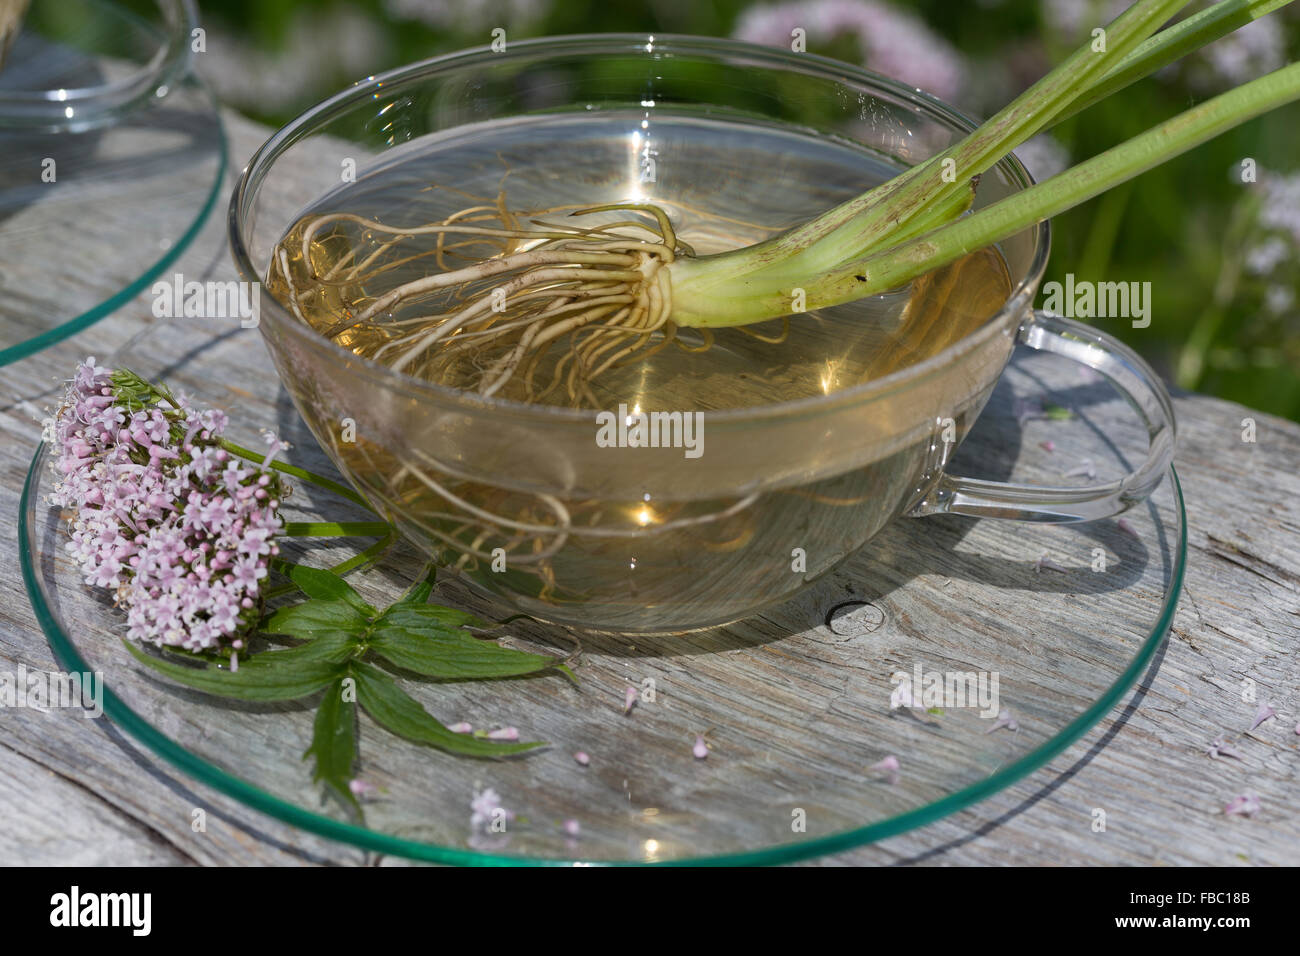 Common Valerian, herb tea, herbal tea, Baldriantee, Kräutertee, Heiltee, Echter Baldrian, Baldrianblüten, Valeriana officinalis Stock Photo